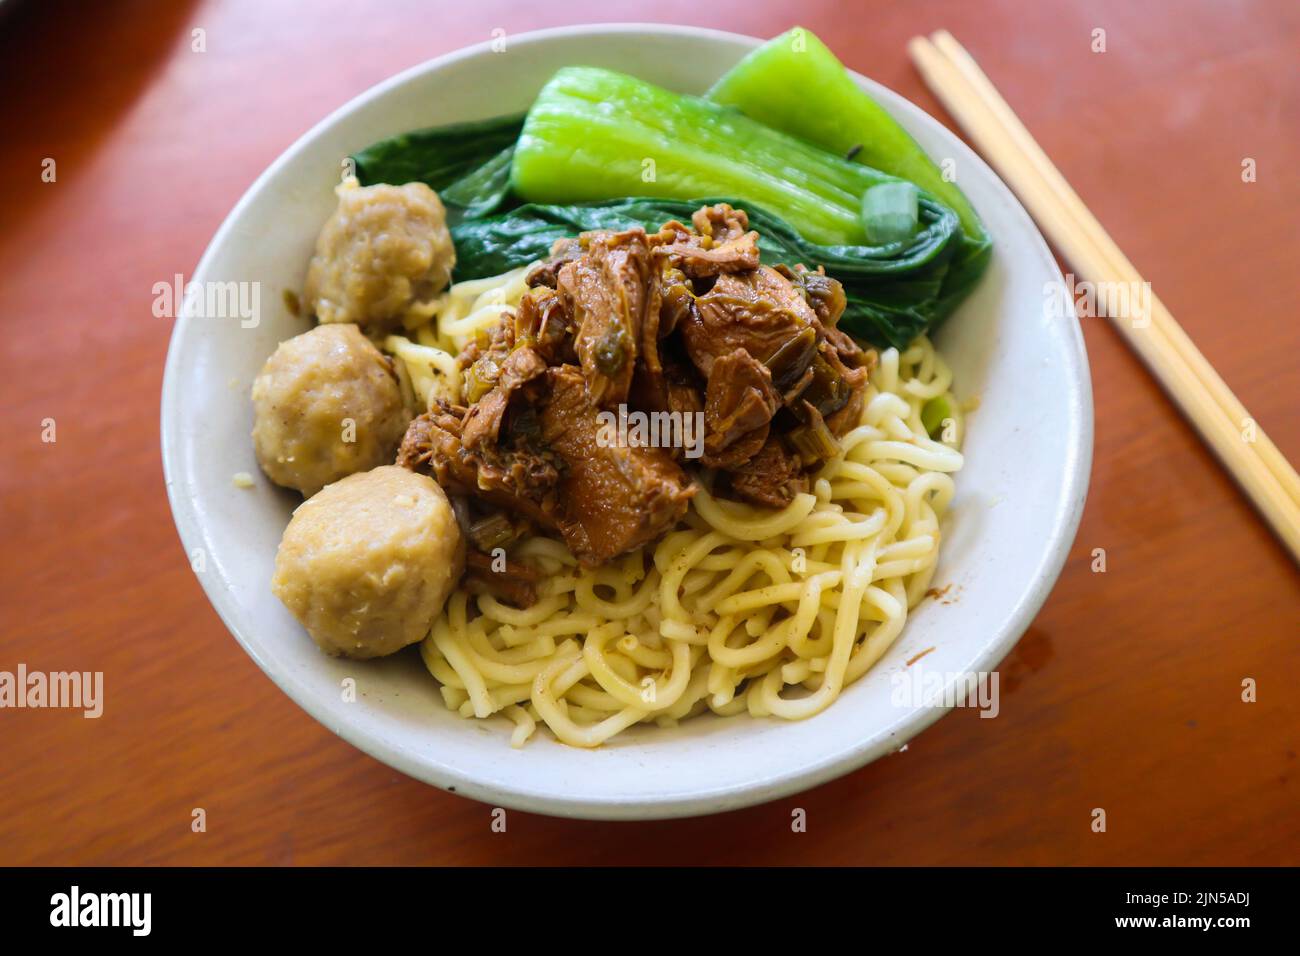 il pollo al mie ayam o al noodles è un alimento tradizionale indonesiano, asiatico, a base di noodle, pollo, brodo di pollo, spinaci, talvolta con polpette. Foto Stock